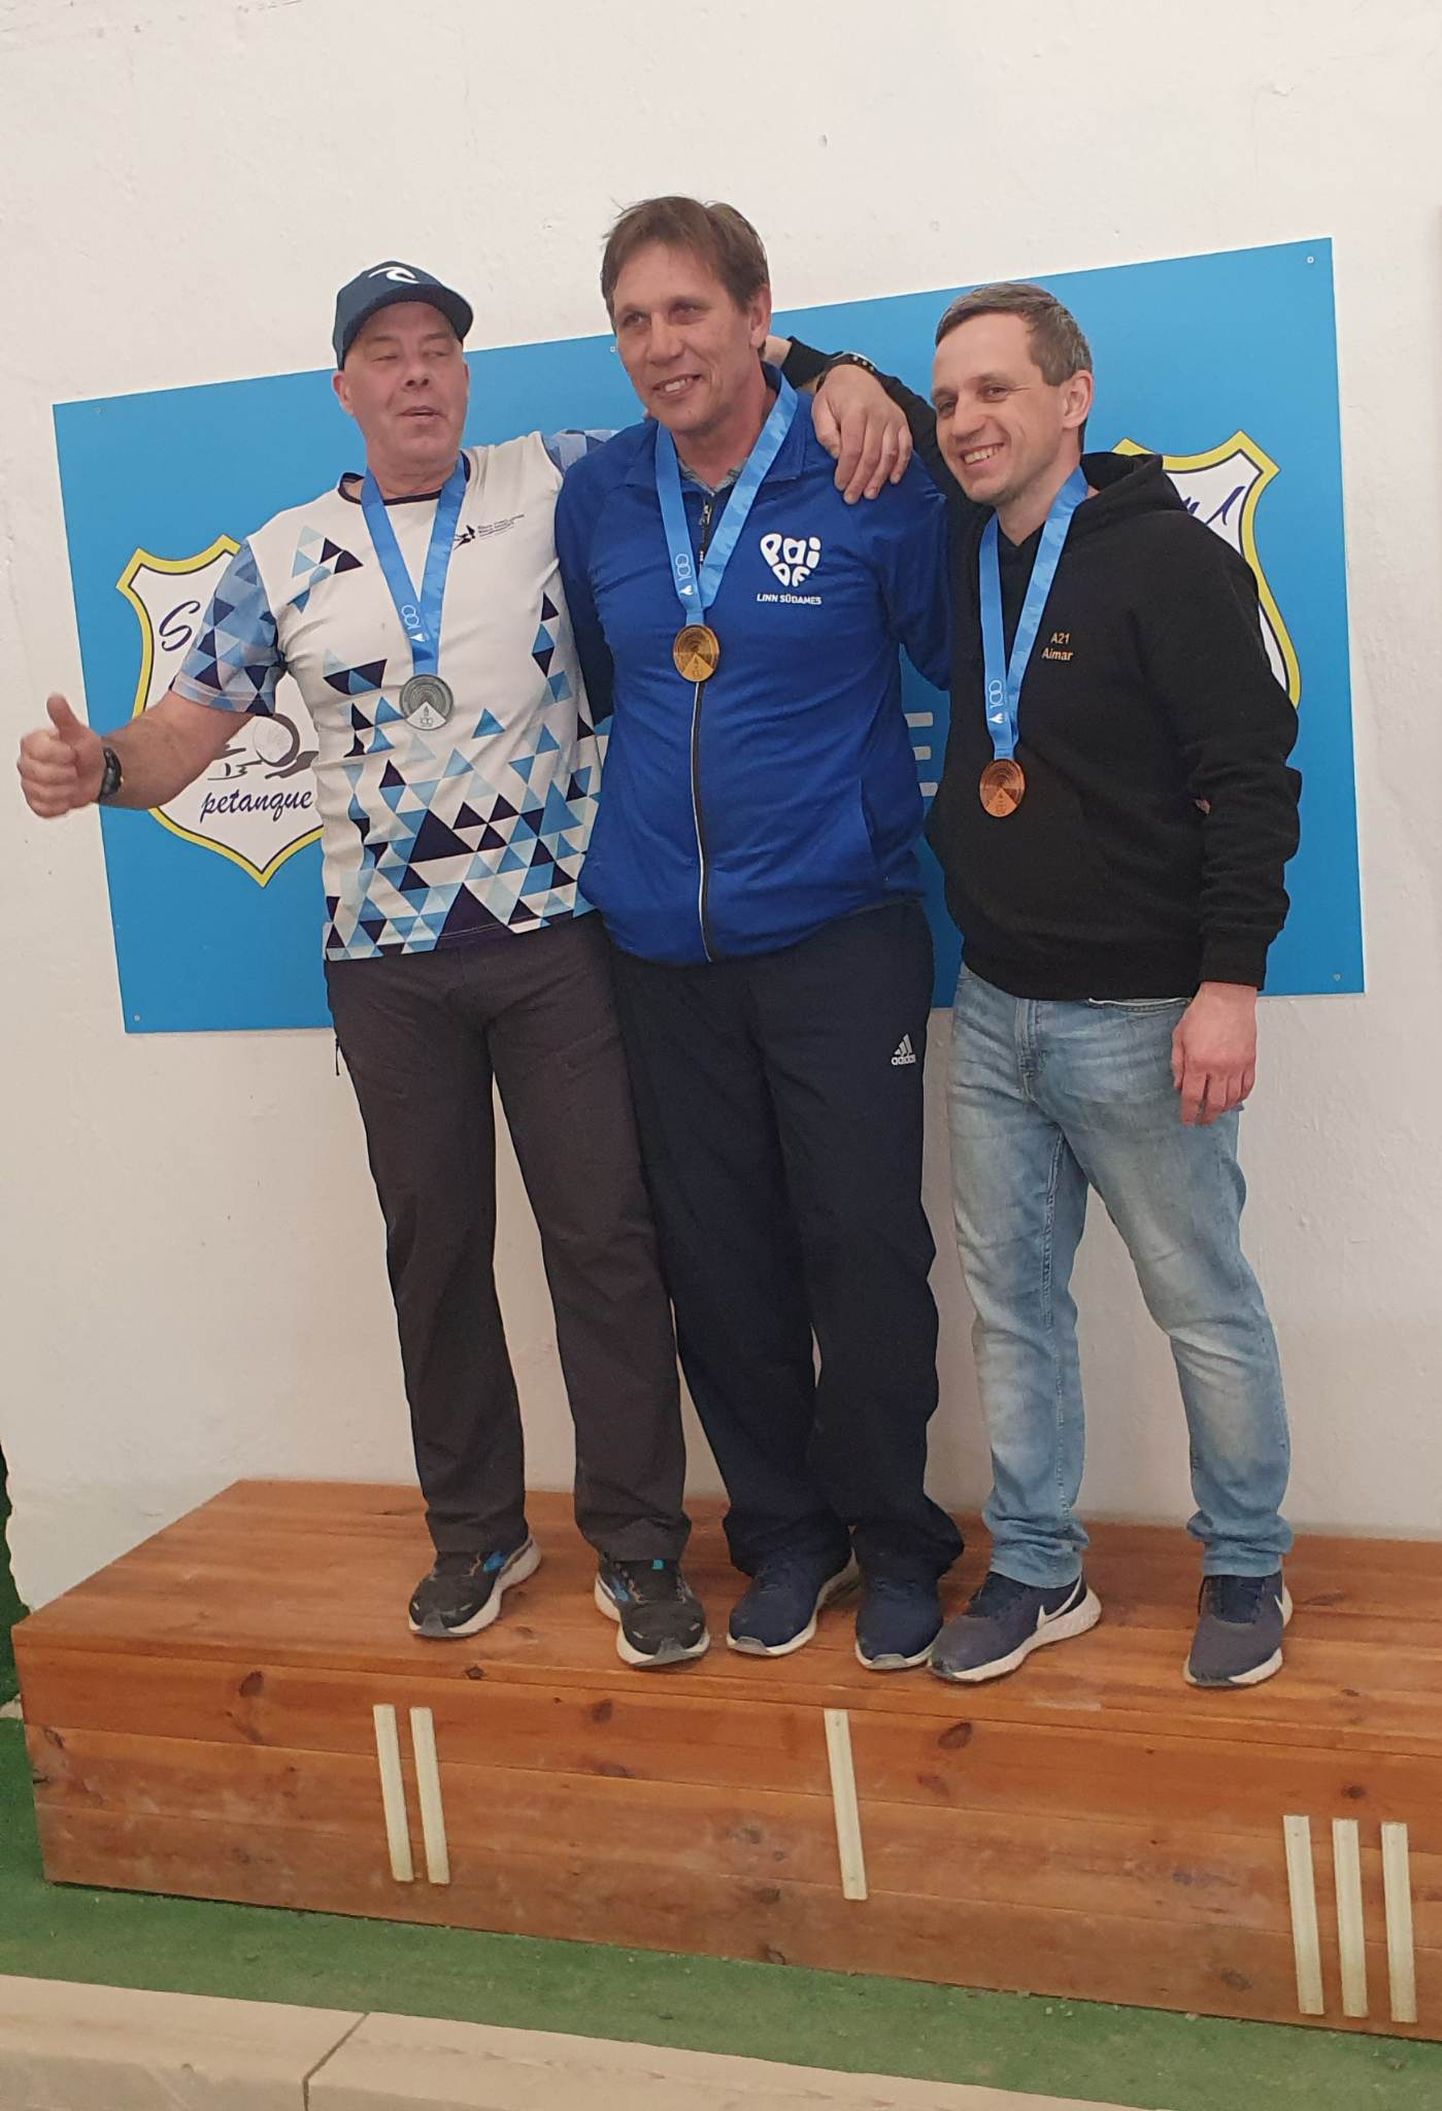 31-aastase pausi järel võitis Eesti meistritiitli petanki tulistamise harjutuses Enn Lehtpuu (keskel). Teiseks tuli Jaan Joonas (vasakul) ja kolmandaks Aimar Poom (paremal).